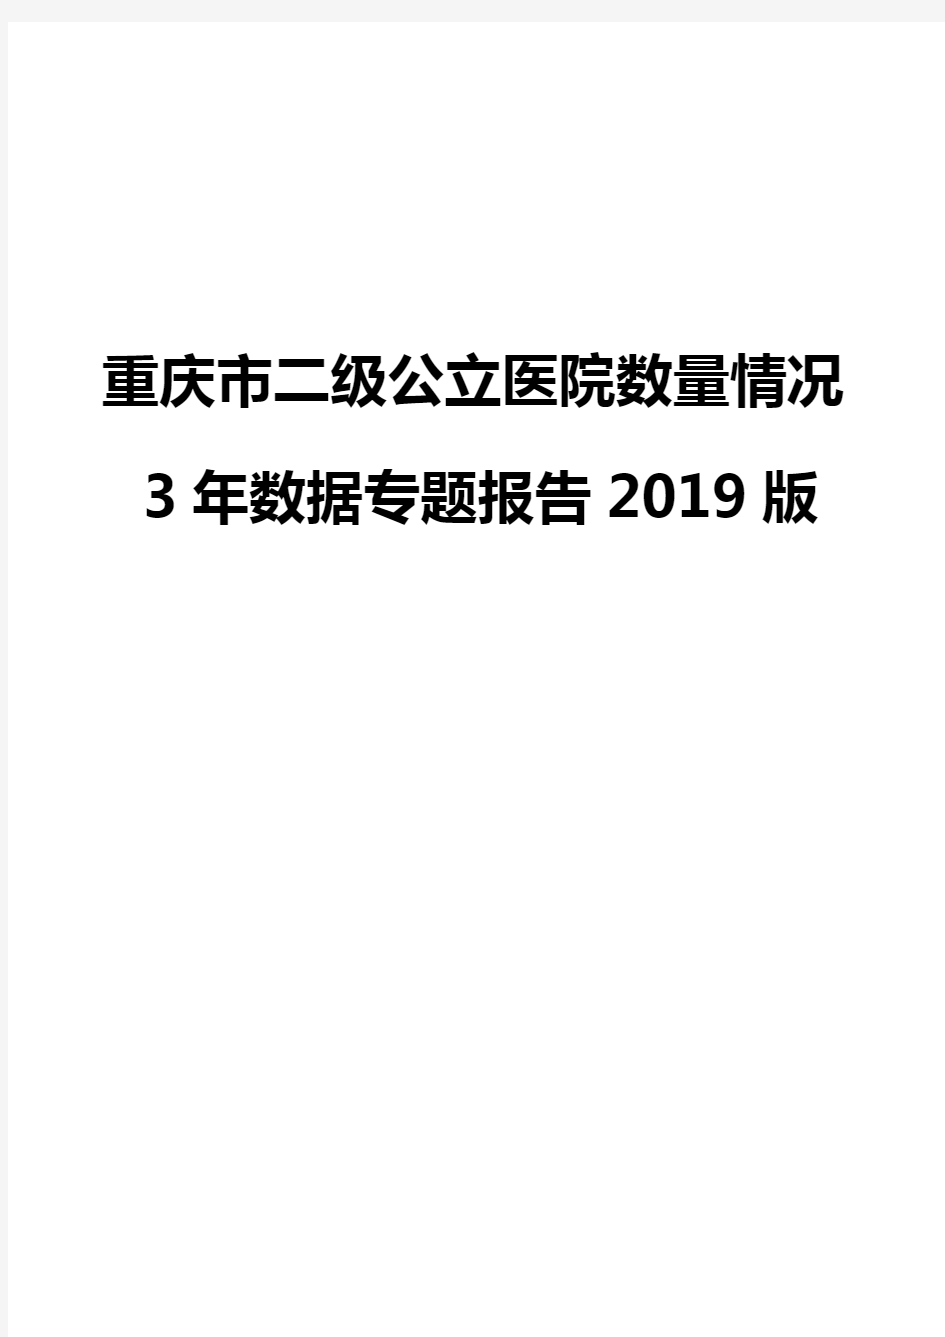 重庆市二级公立医院数量情况3年数据专题报告2019版